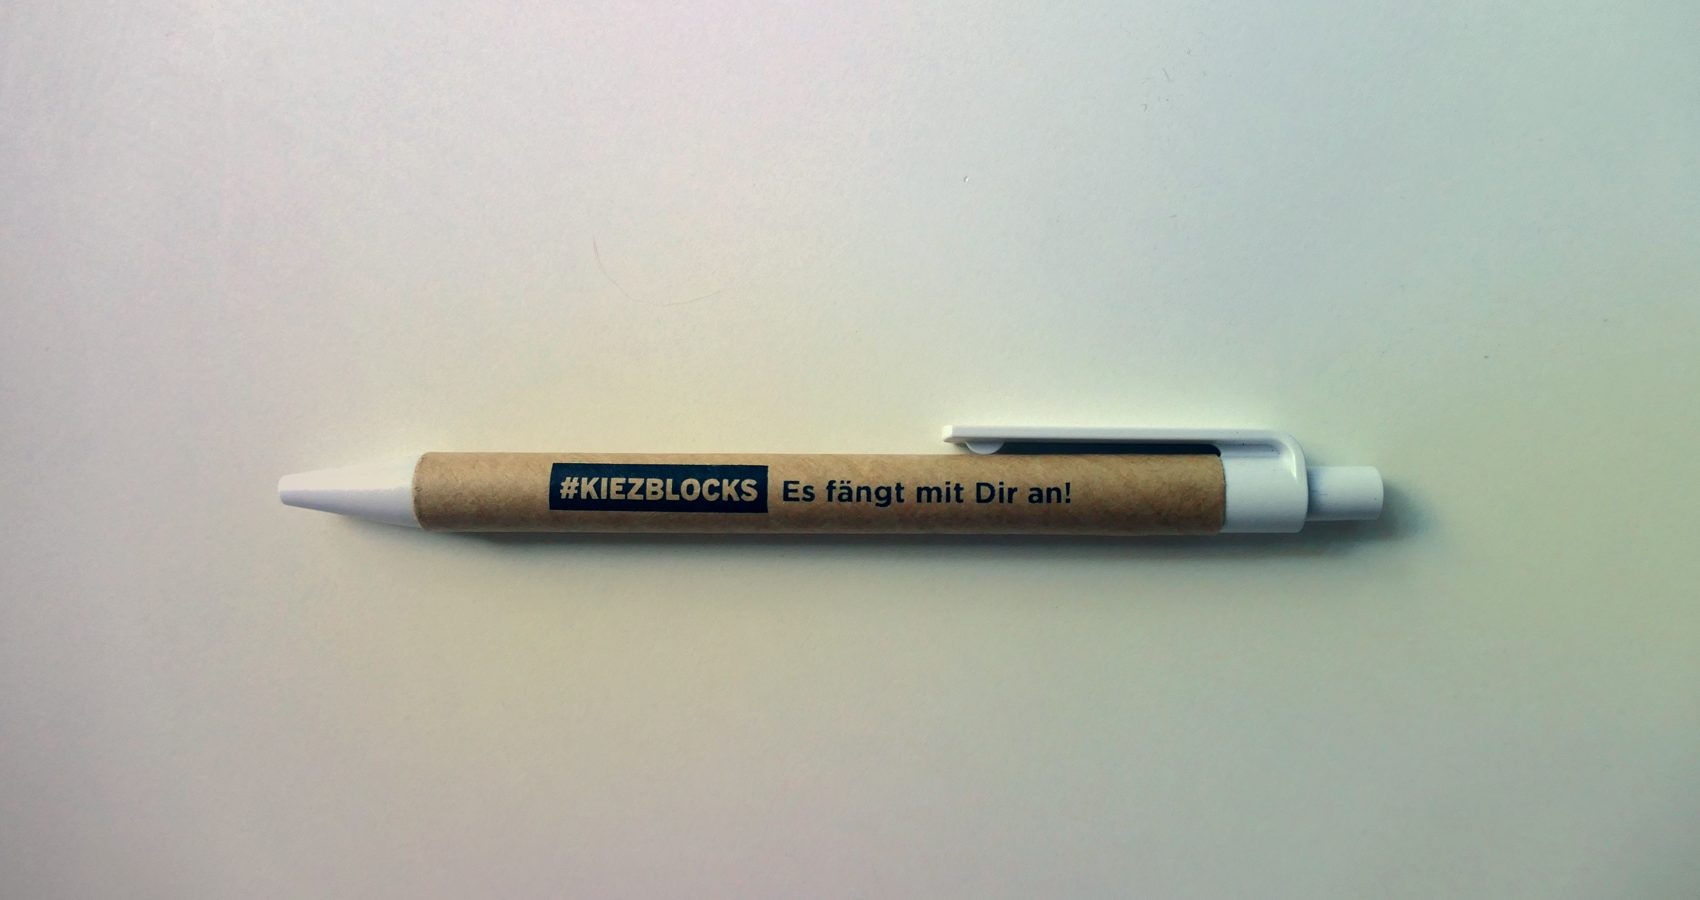 Kiezblocks – Stift "Es fängt mit Dir an!"